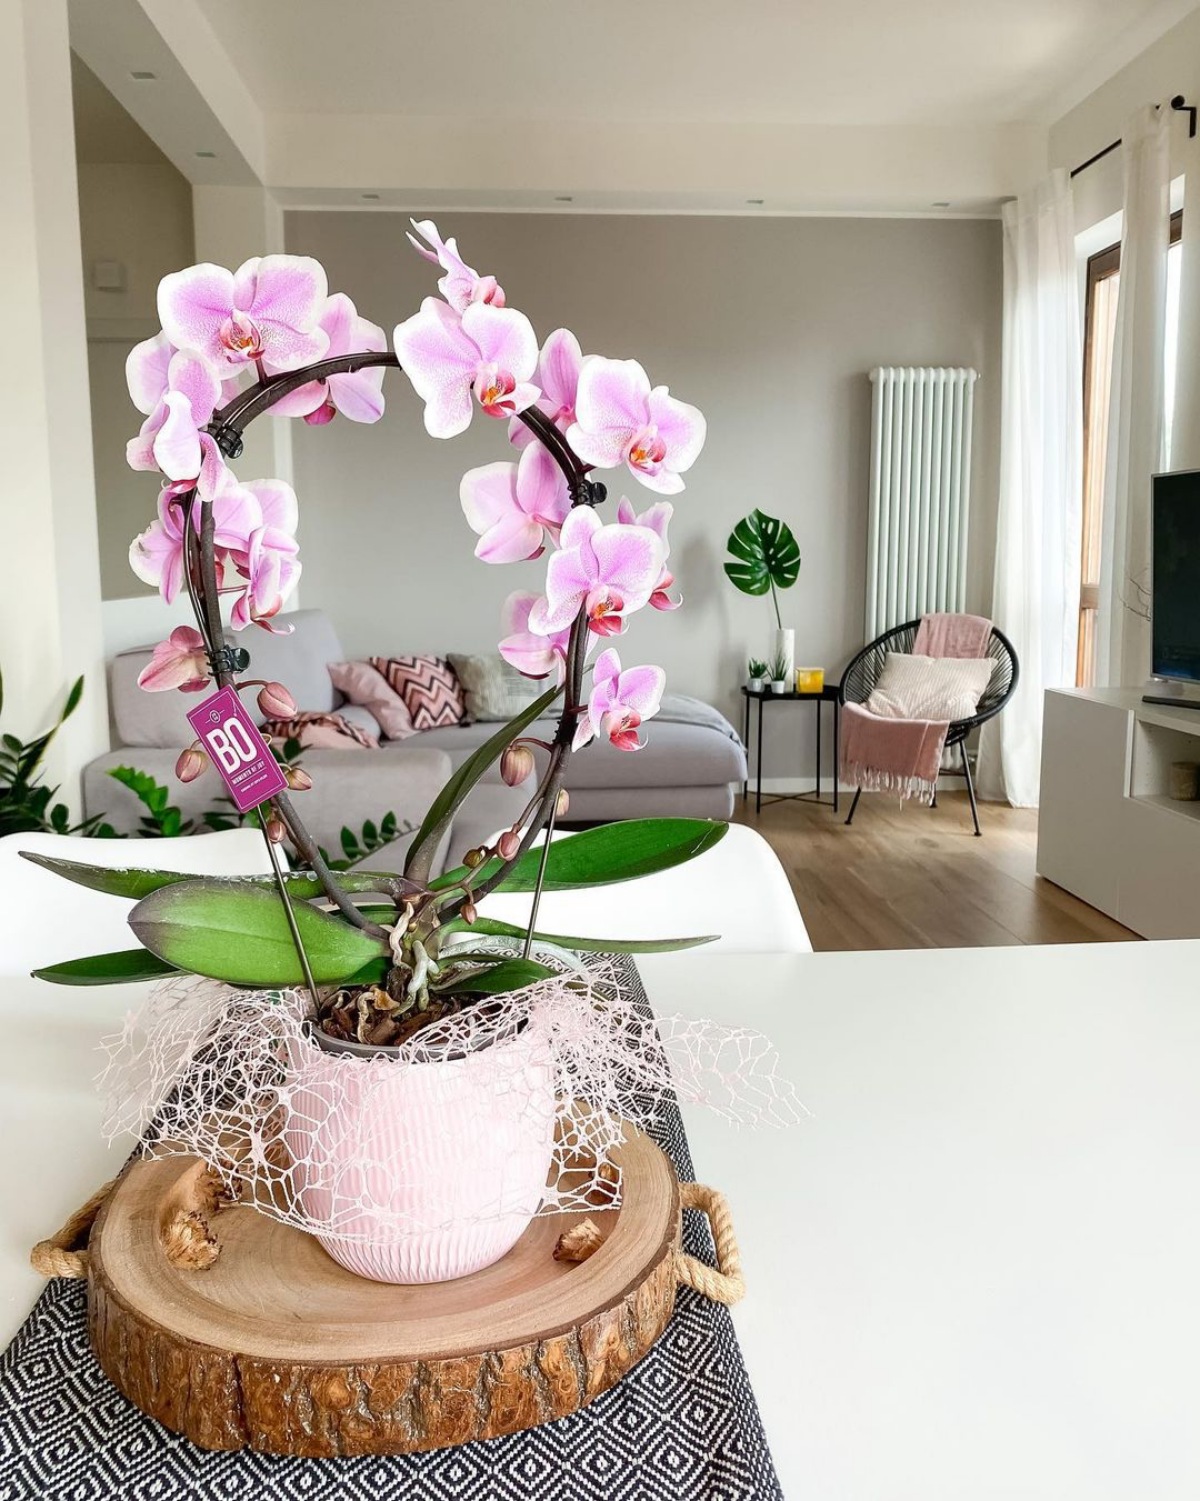 decorazione isola cucina con orchidea colorata